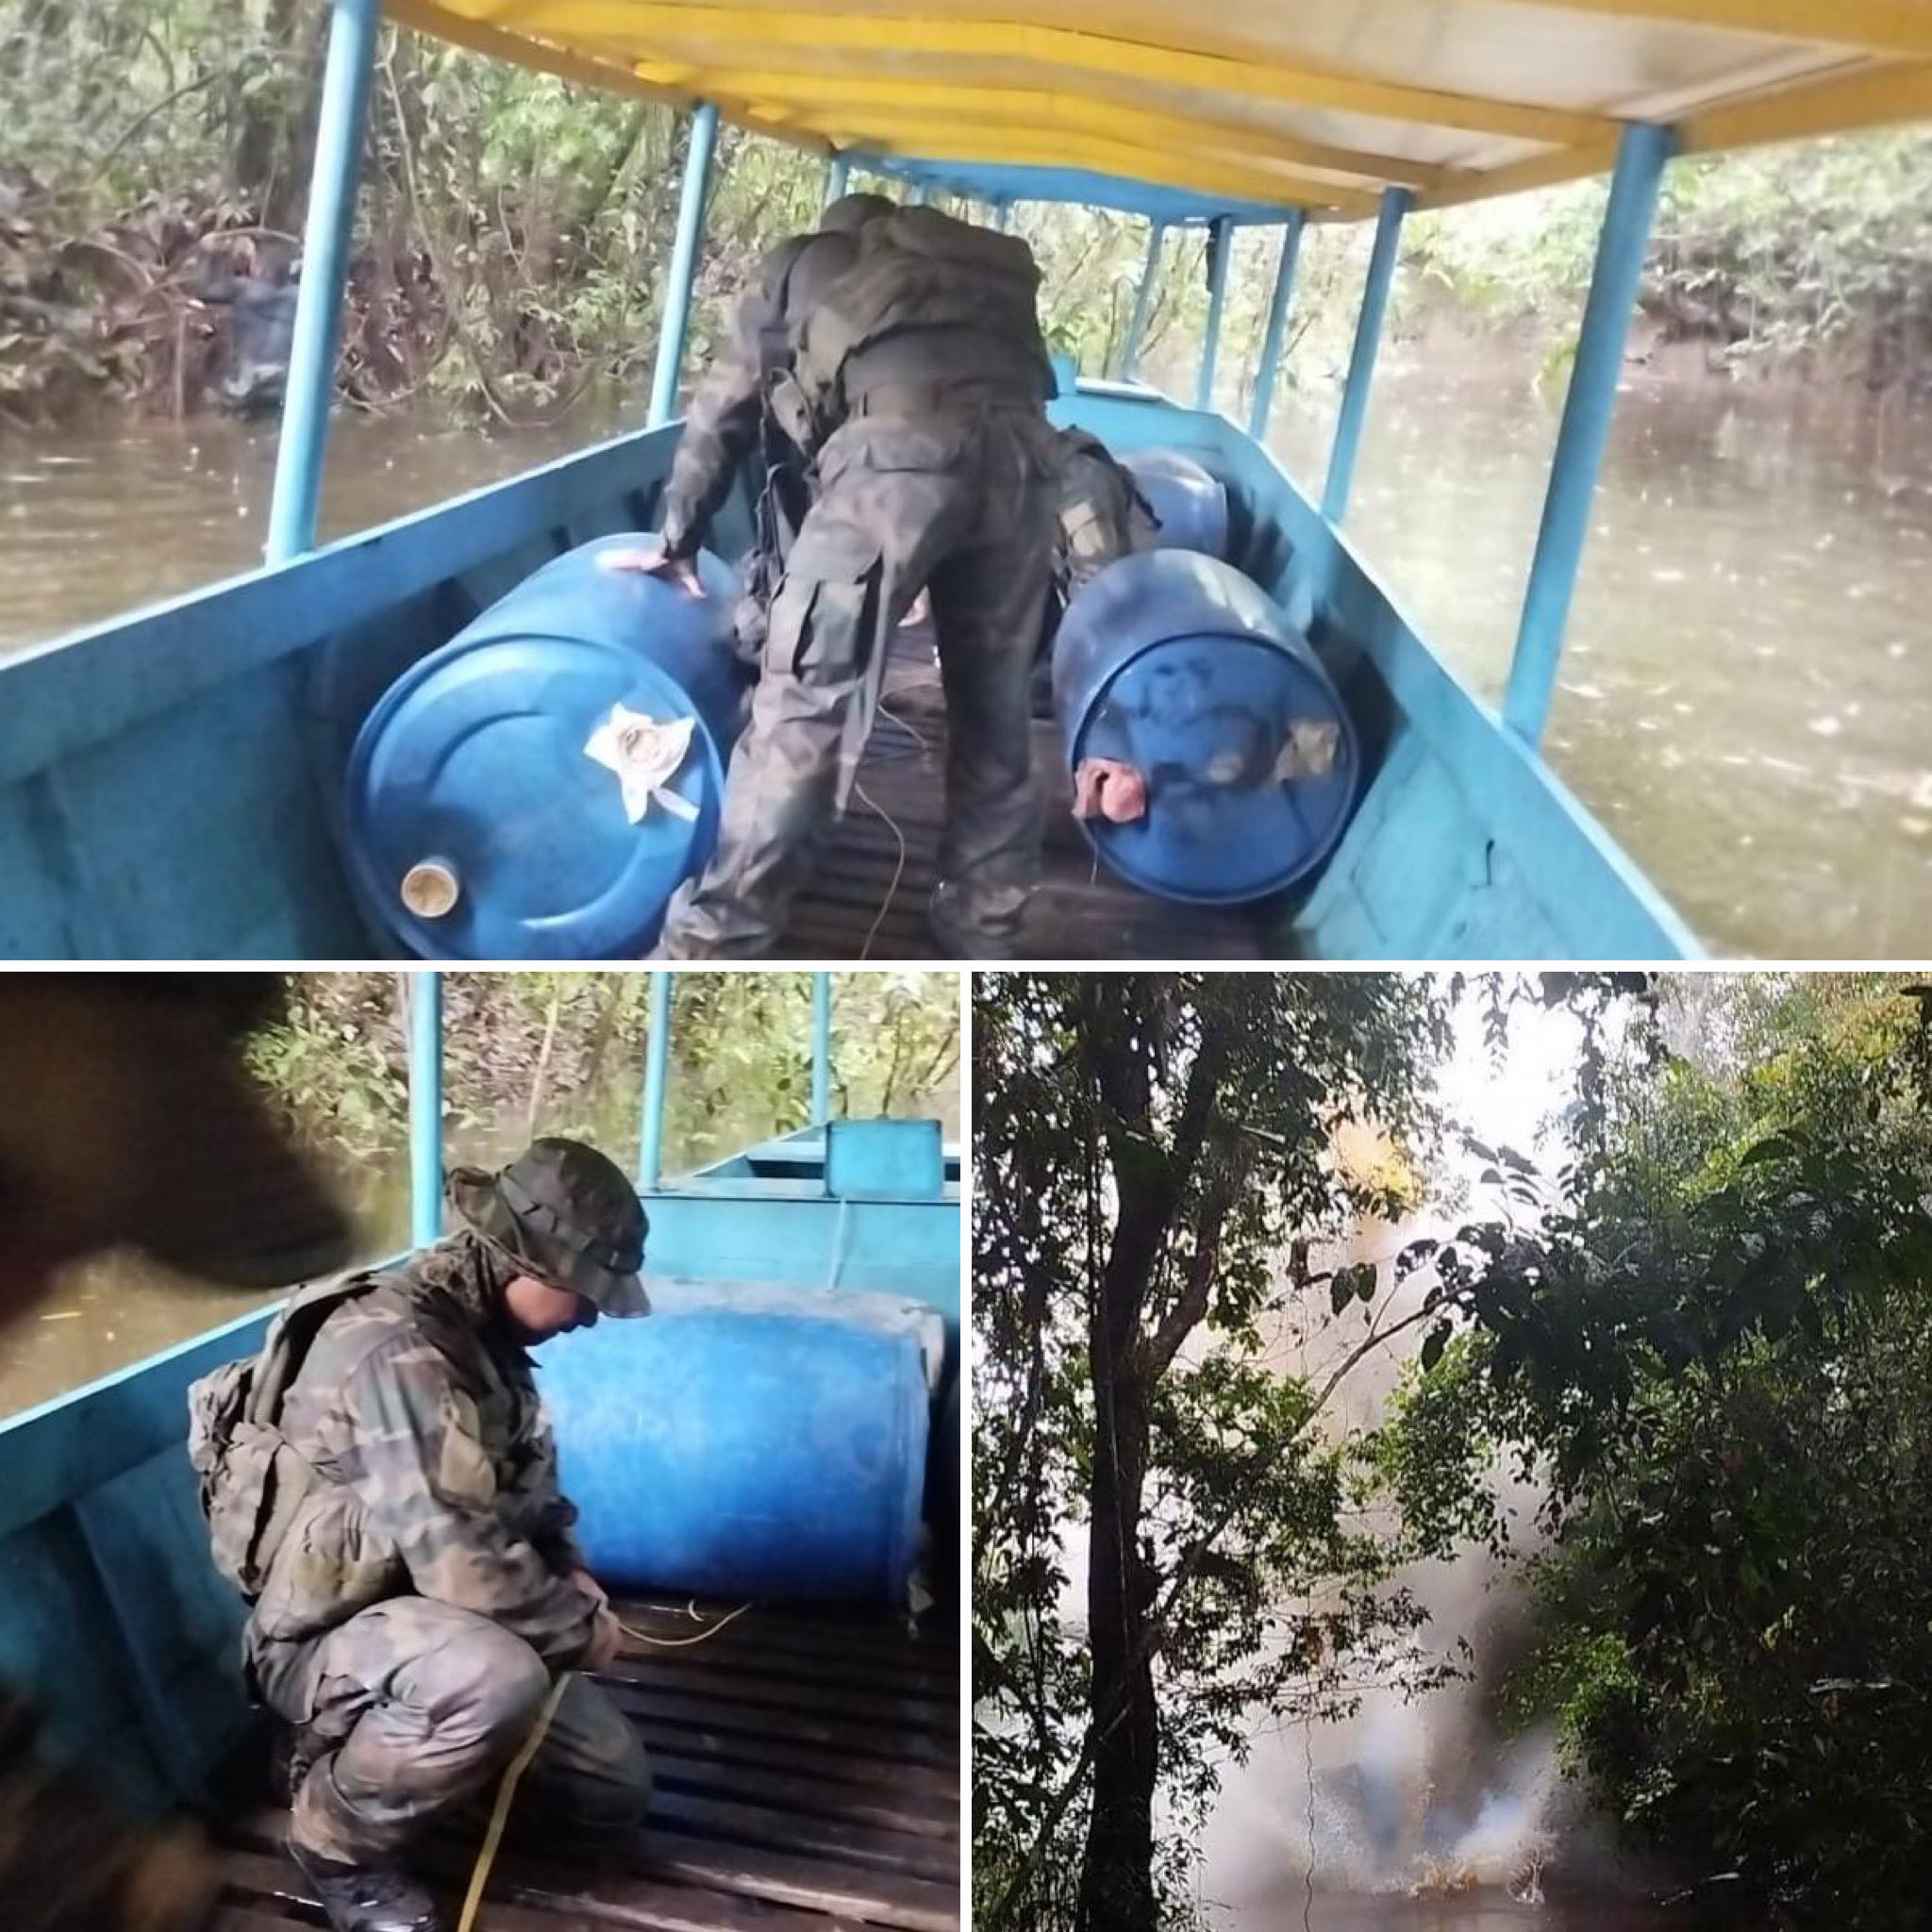 En lo que va de Mayo, la Fanb dice haber destruido 14 balsas de minería ilegal en Amazonas